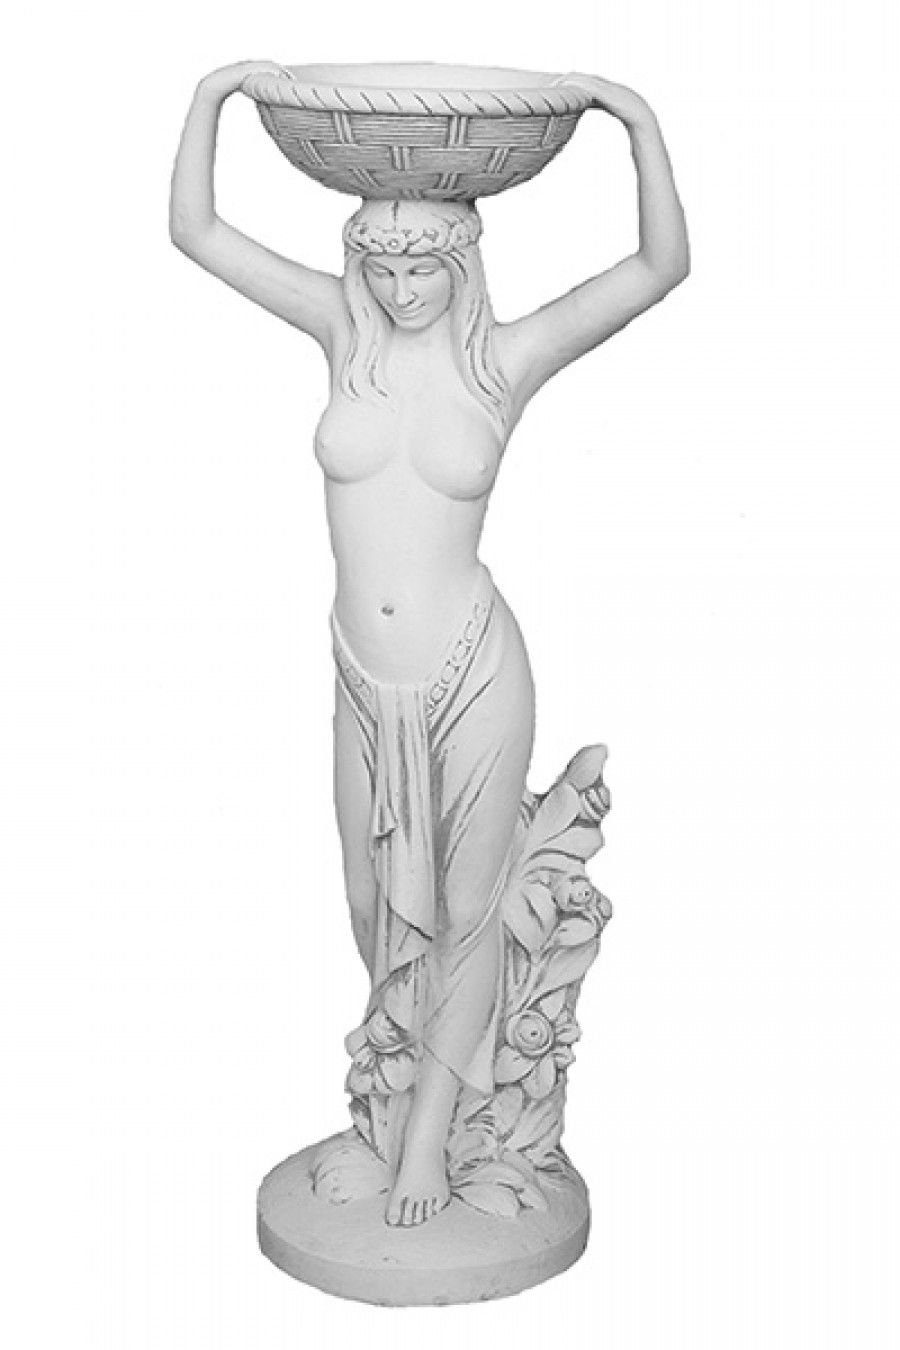 Blumensch Stein Wohndesign Gartenfigur Wasserfontäne Antikes Frauenskulpture Skulptur Pflanzenschalen